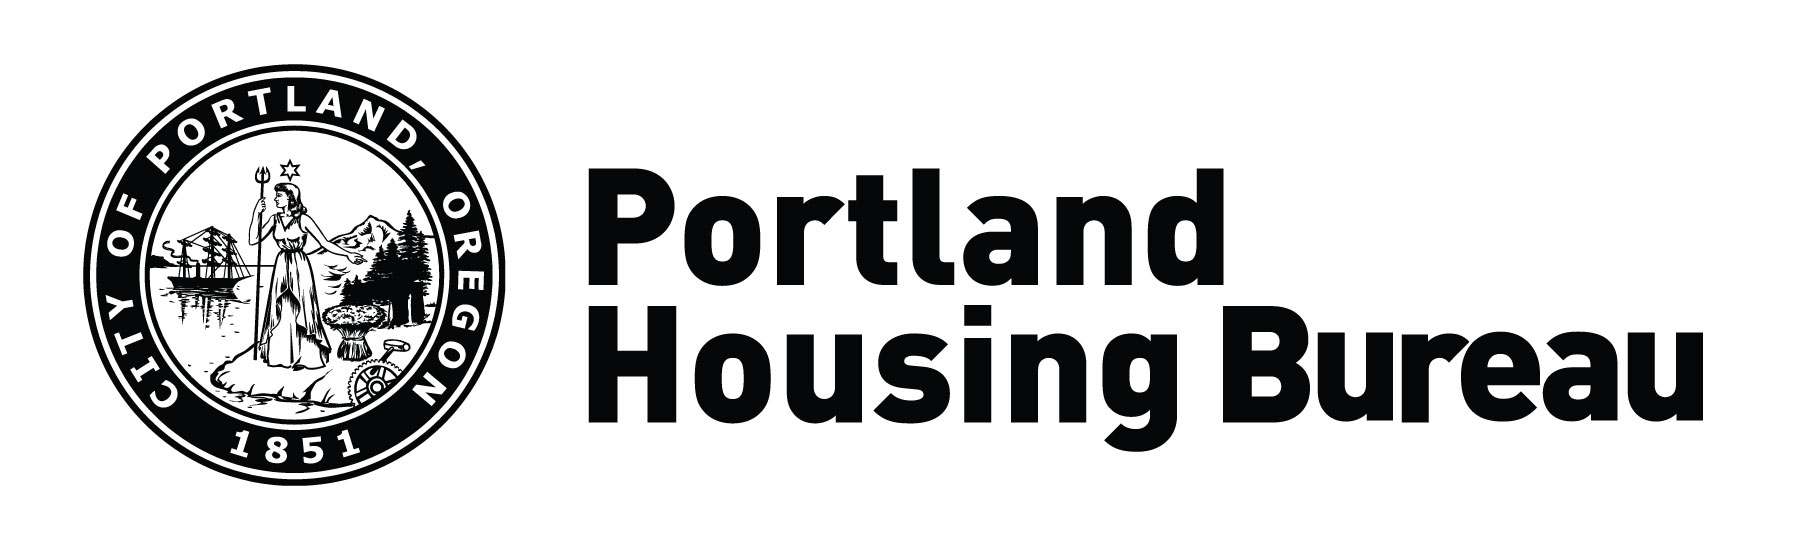 Porland Housing Bureau Logo